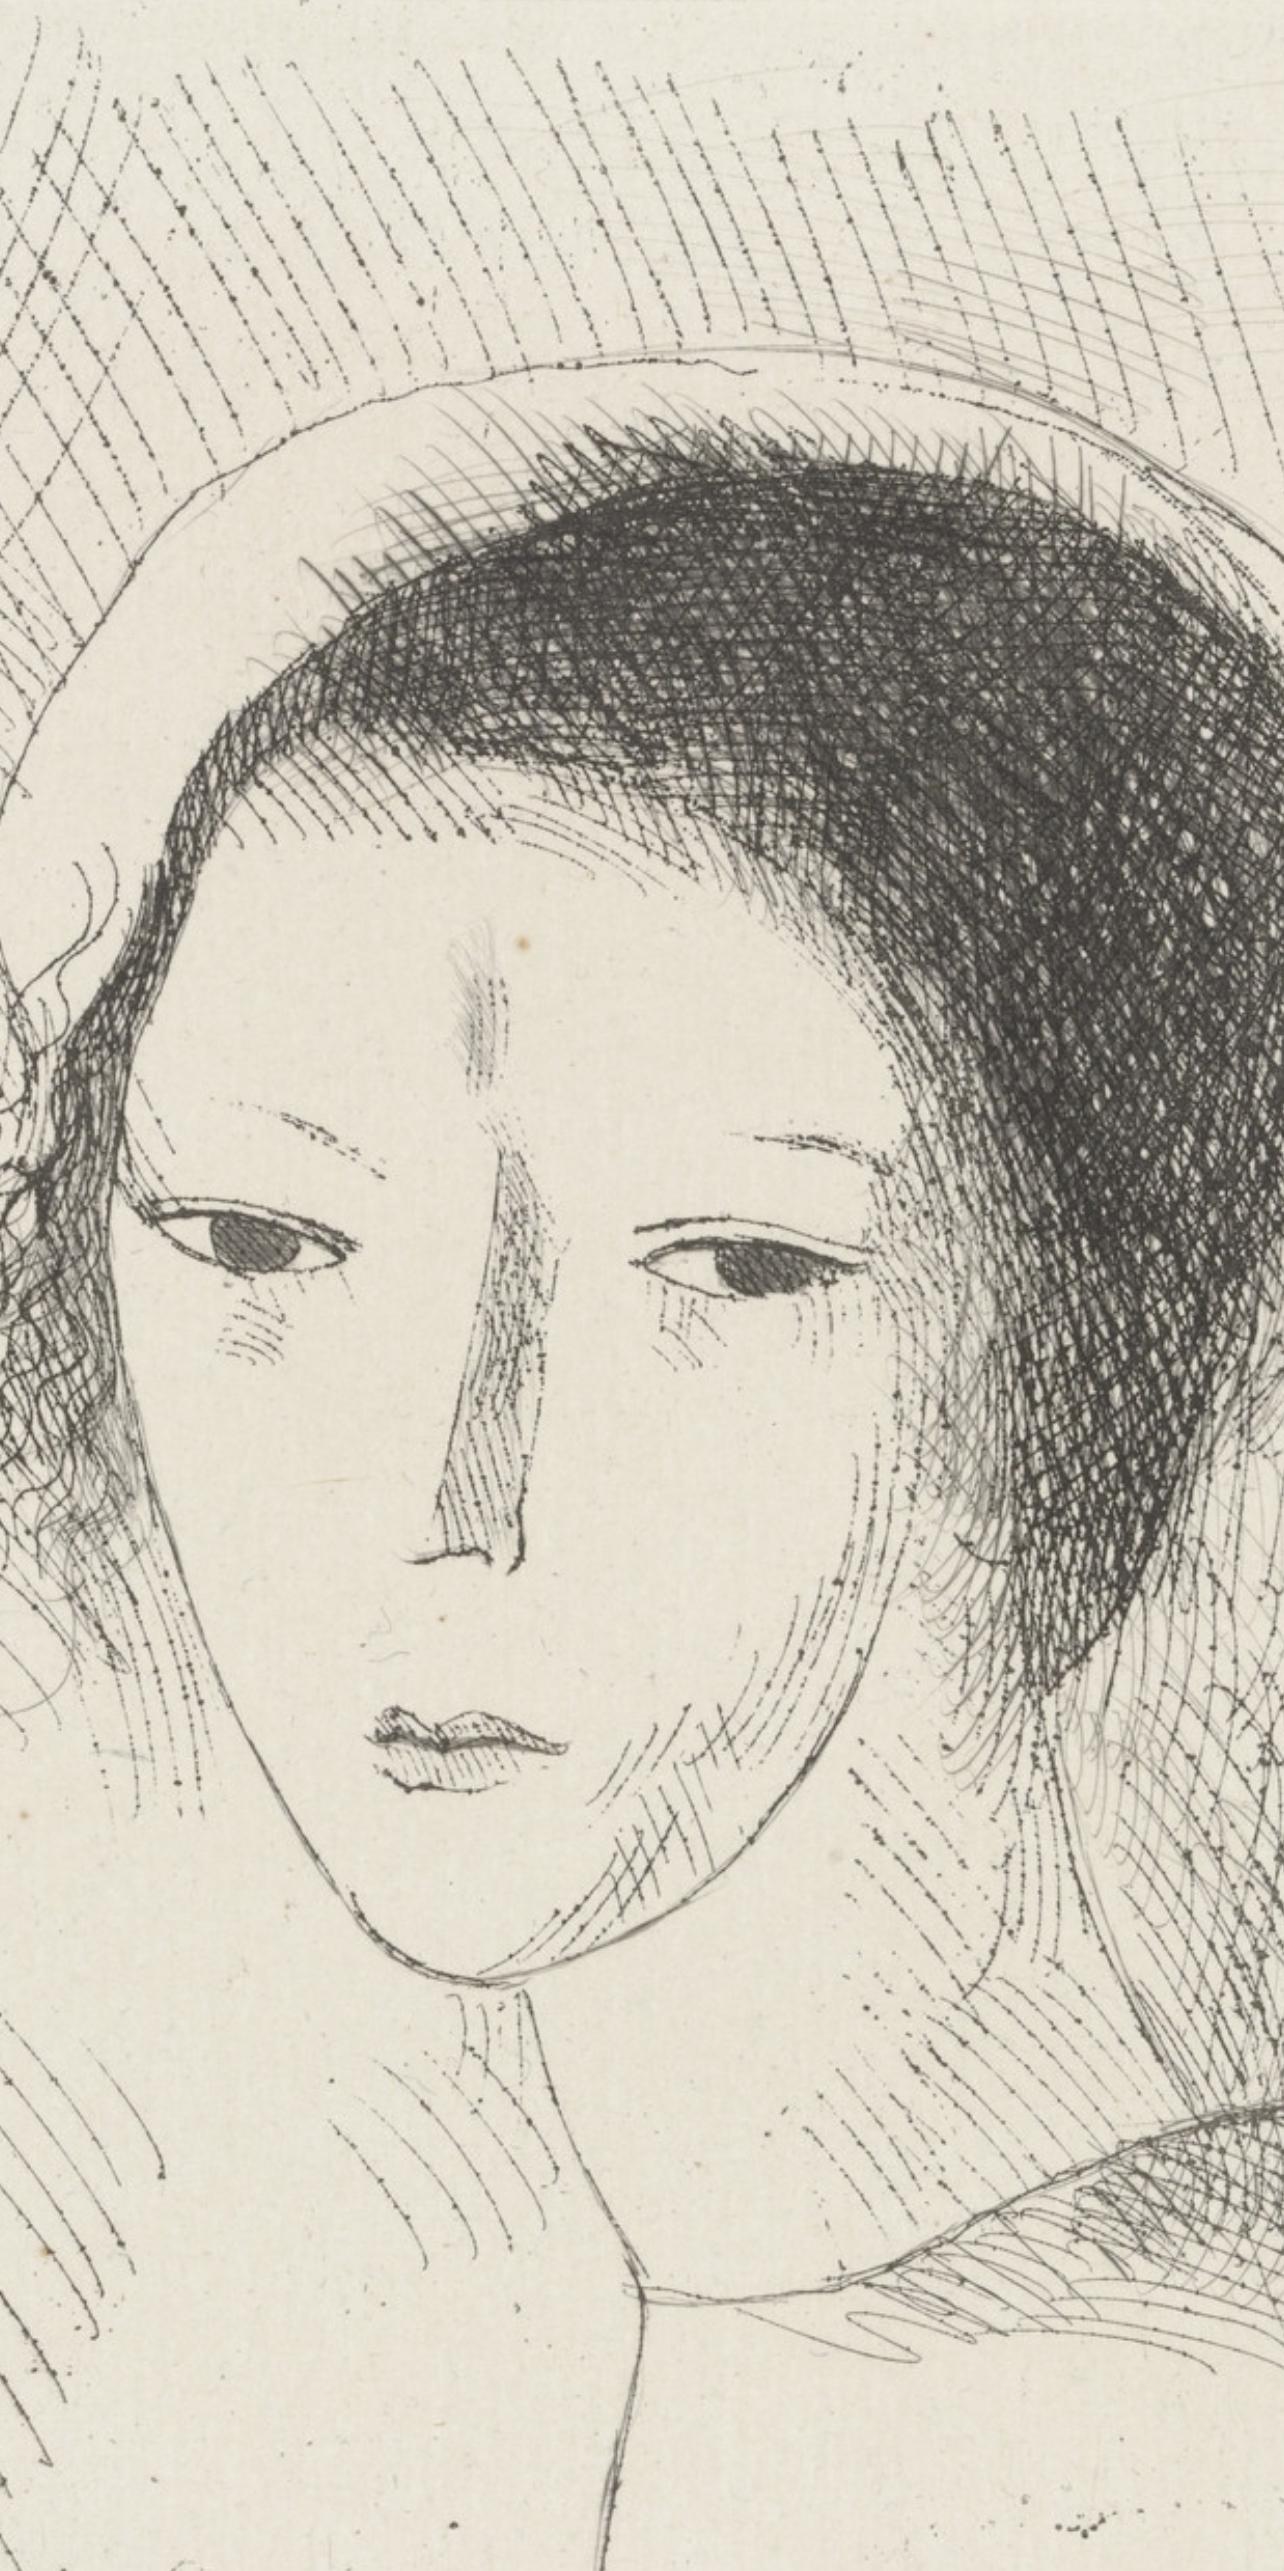 Laurencin, Tête de jeune fille (Marchesseau 250), Du cubisme (after) - Print by Marie Laurencin